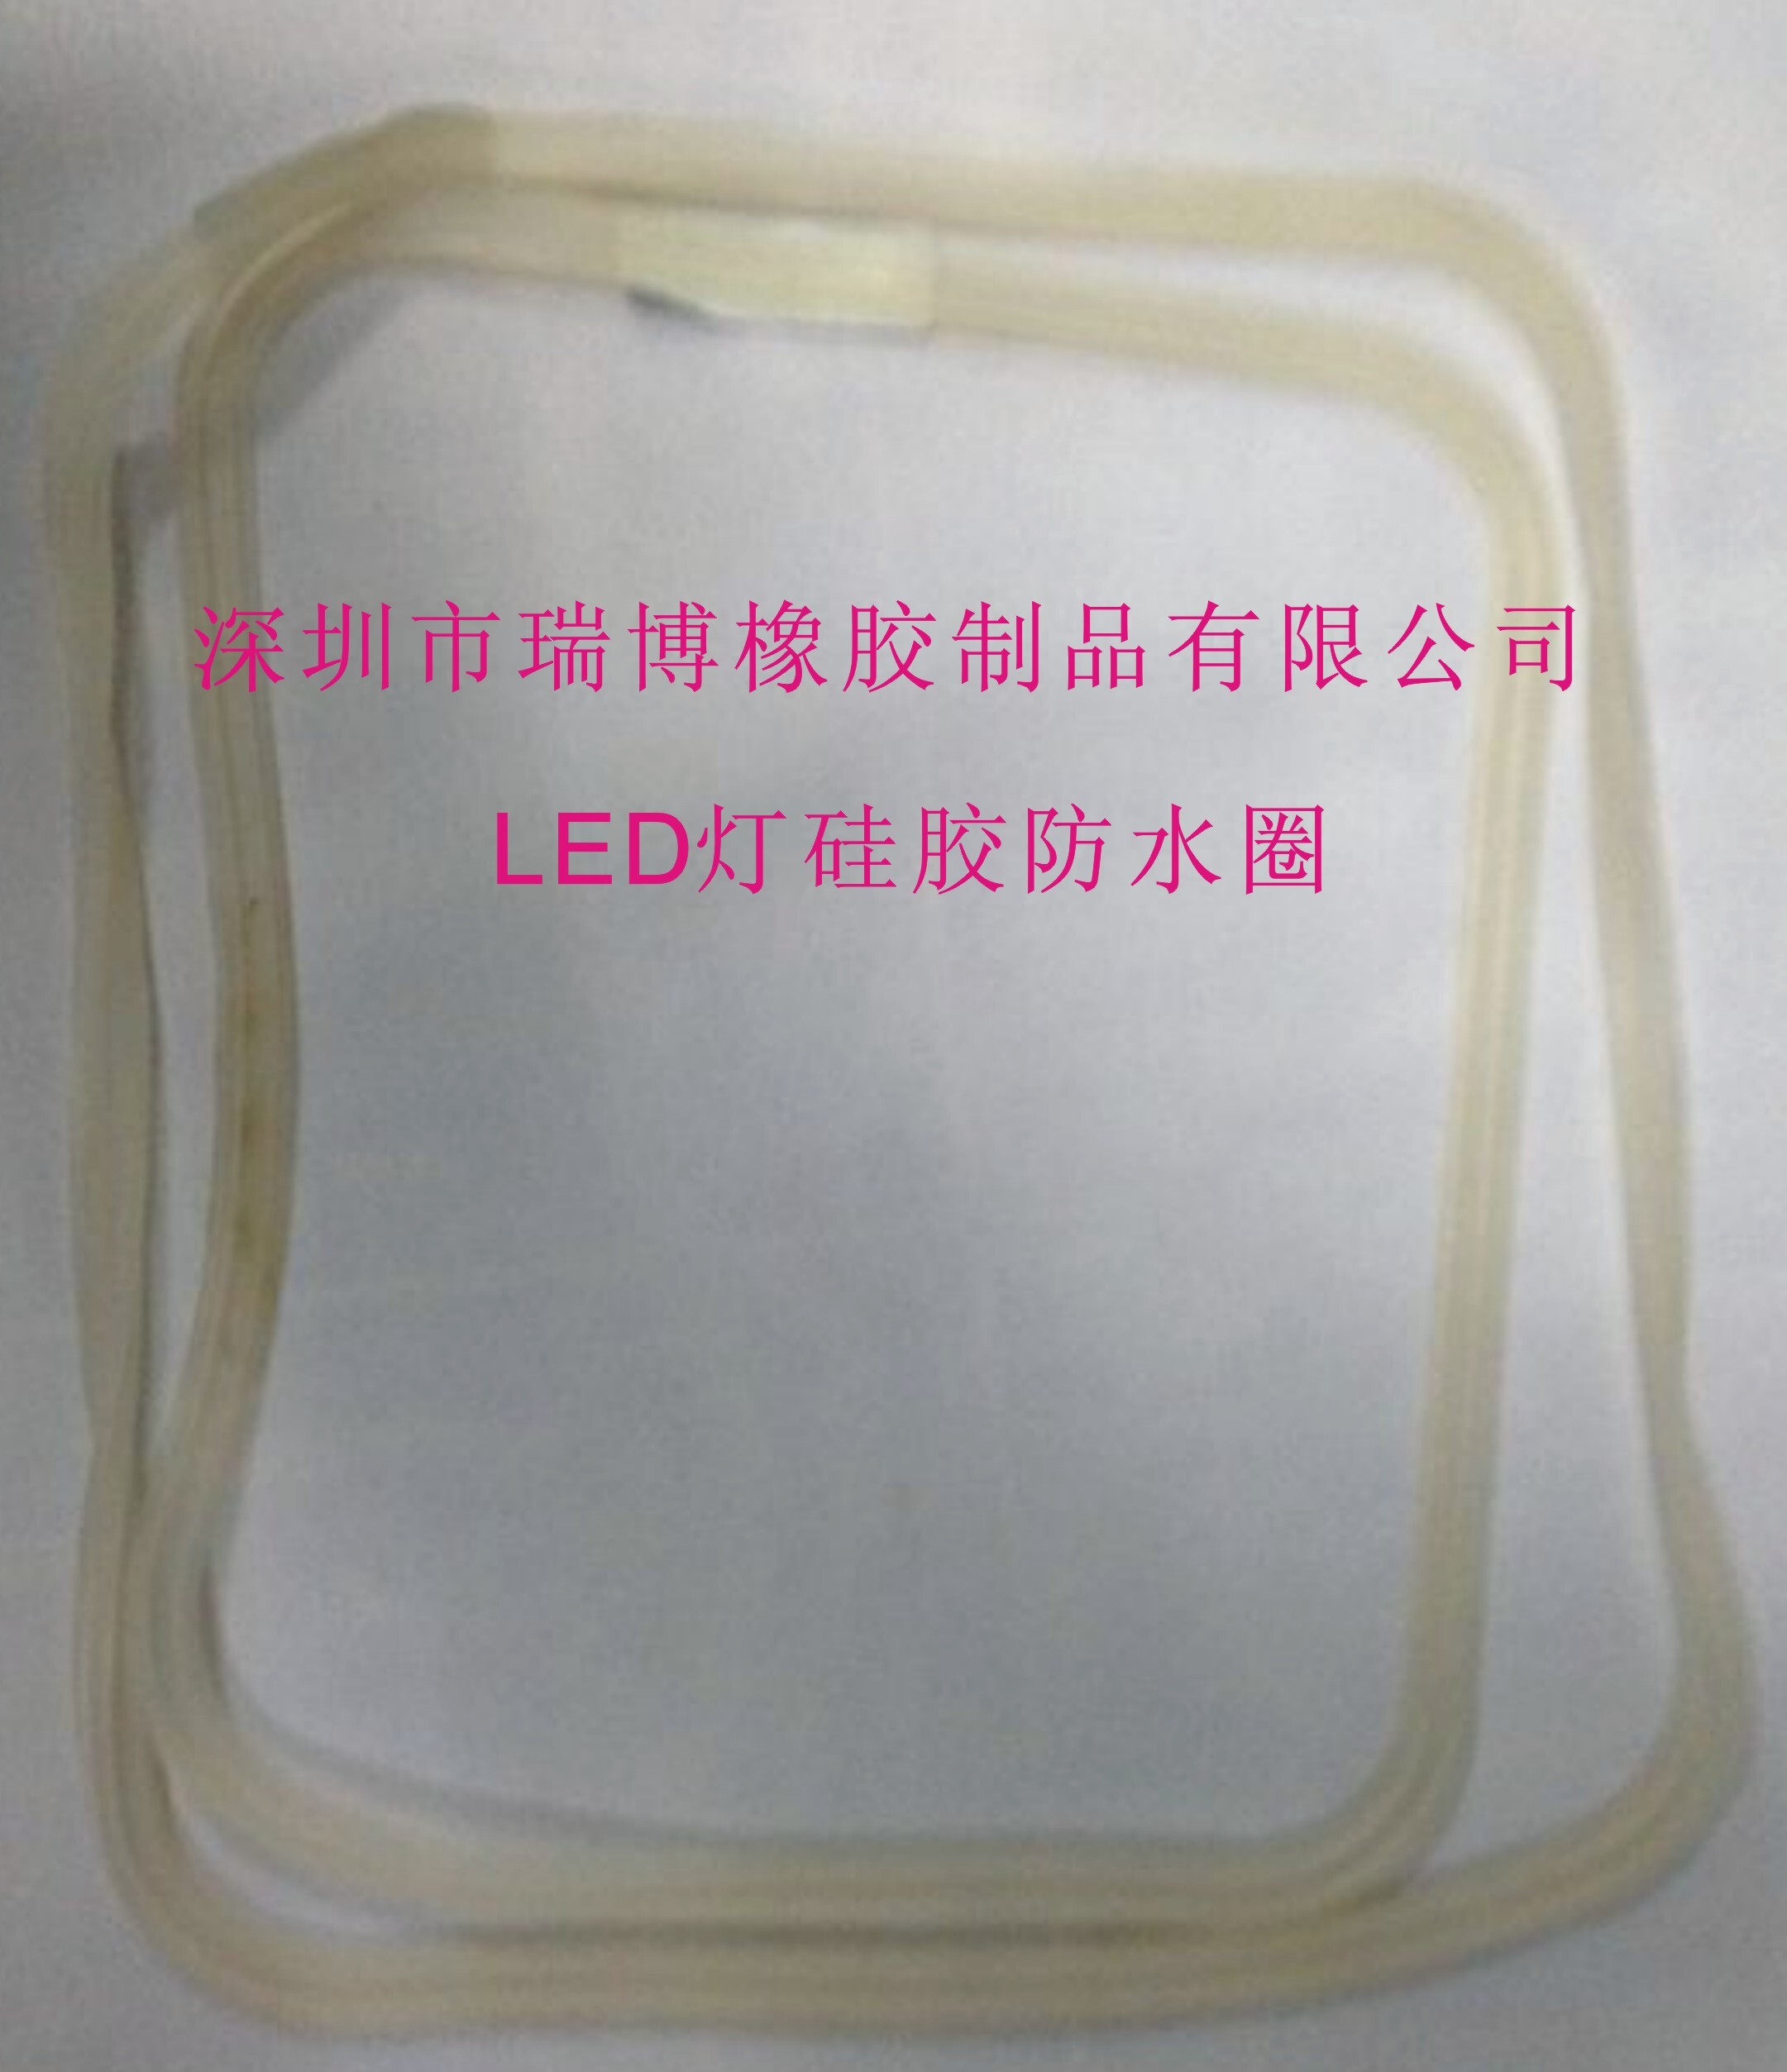 深圳市瑞博橡胶有限公司---LED灯硅胶防水圈